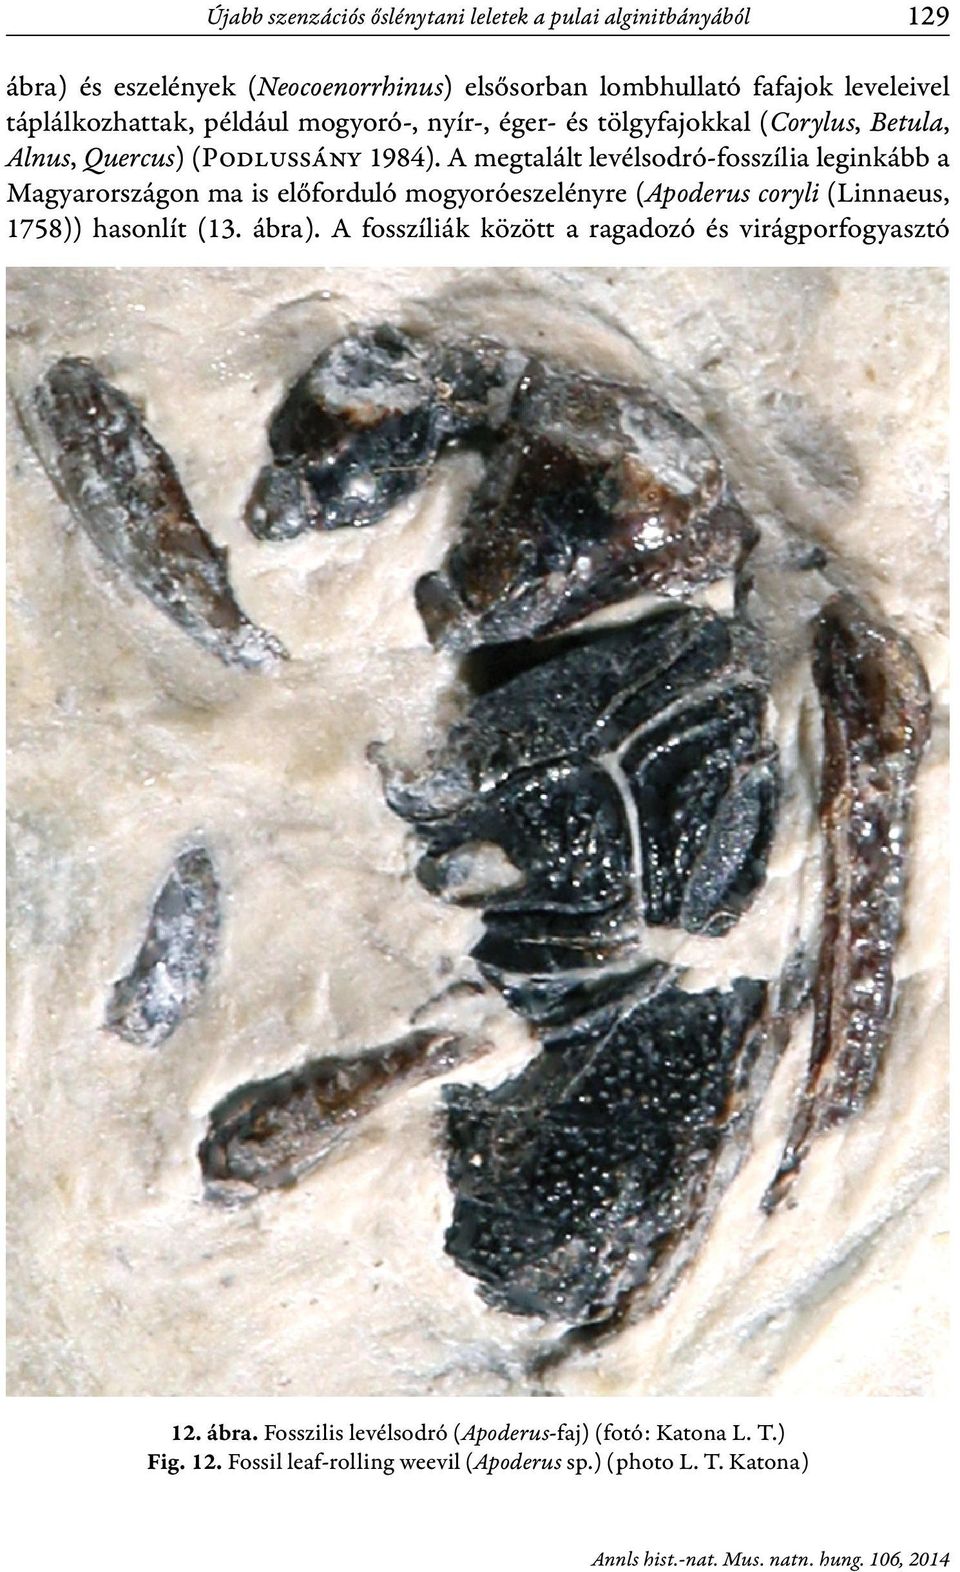 A megtalált levélsodró-fosszília leginkább a Magyarországon ma is előforduló mogyoróeszelényre (Apoderus coryli (Lin naeus, 1758)) hasonlít (13. ábra).